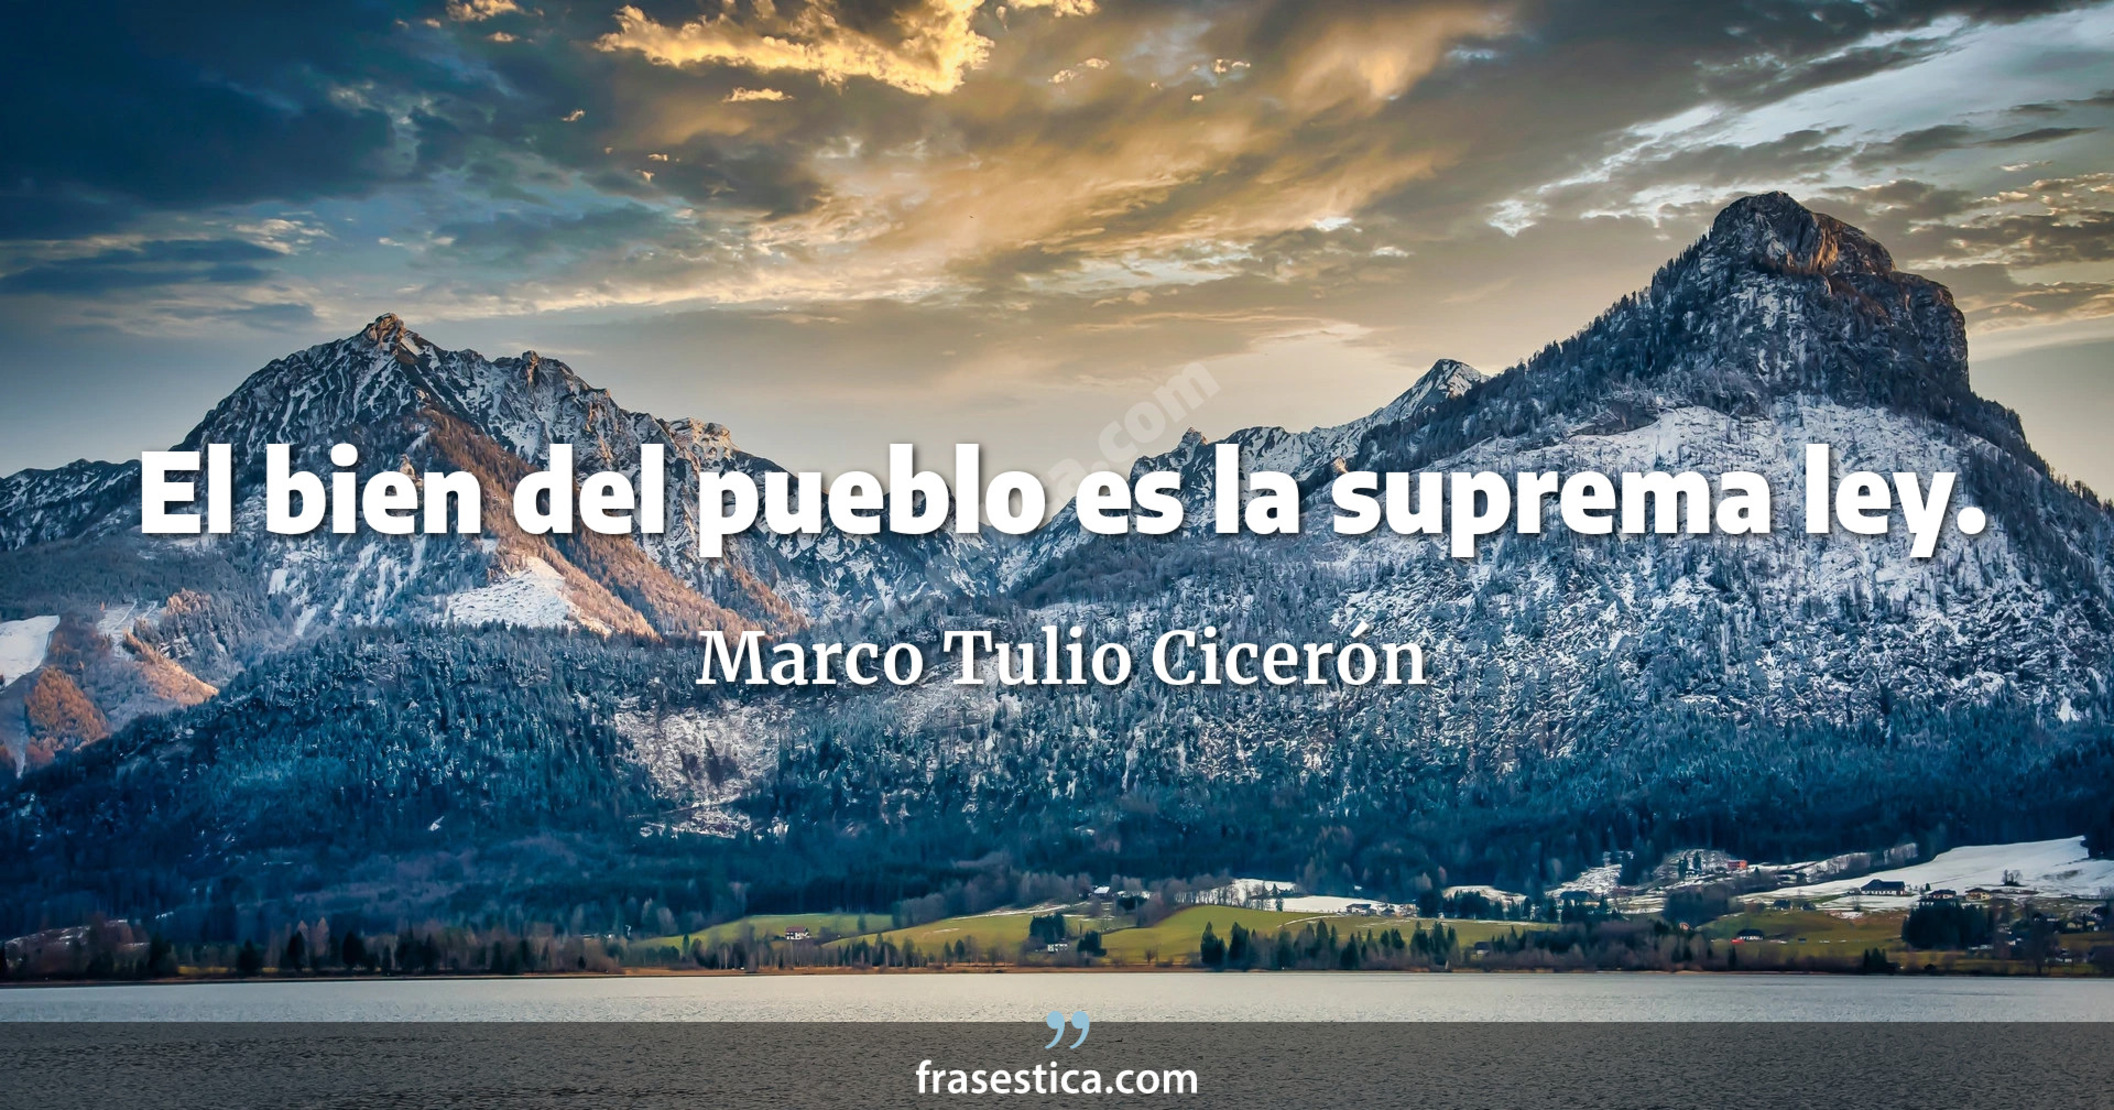 El bien del pueblo es la suprema ley. - Marco Tulio Cicerón